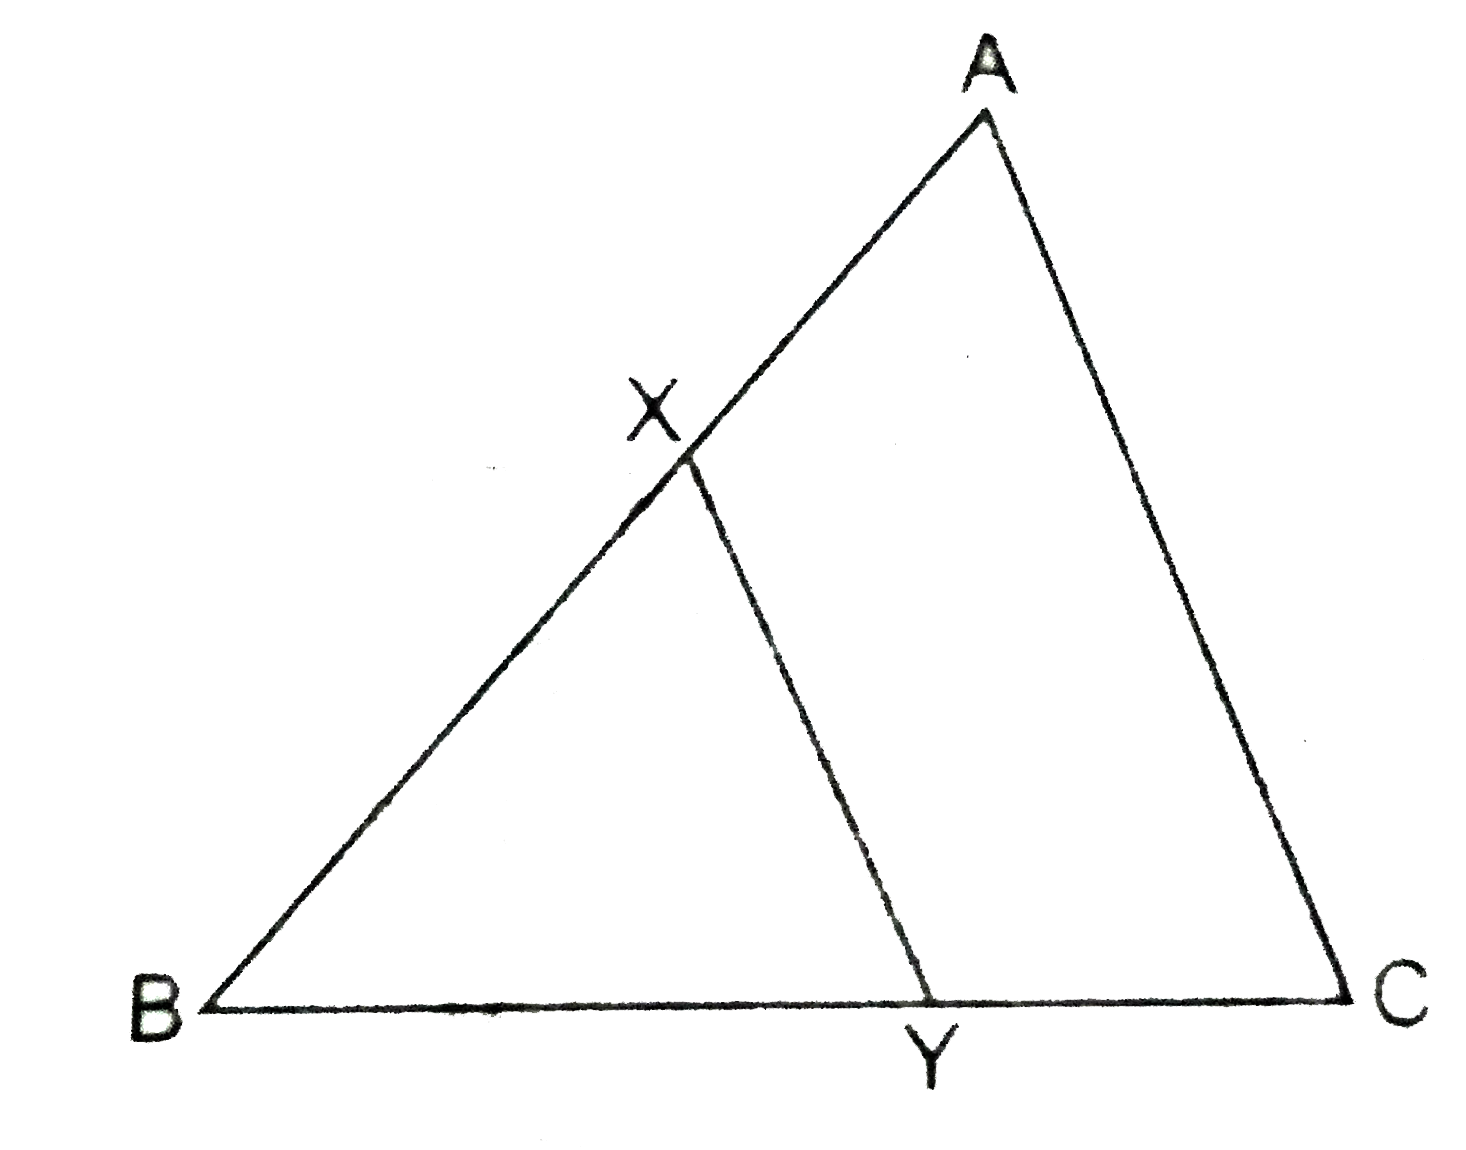 दी गई आकृति में DeltaABC में रेखाखण्ड XY भुजा AC के समान्तर है तथा यह त्रिभुज को दो बराबर क्षेत्रफलों वाले भागों में विभाजित करता है।  (AX)/(AB)  अनुपात ज्ञात करों।